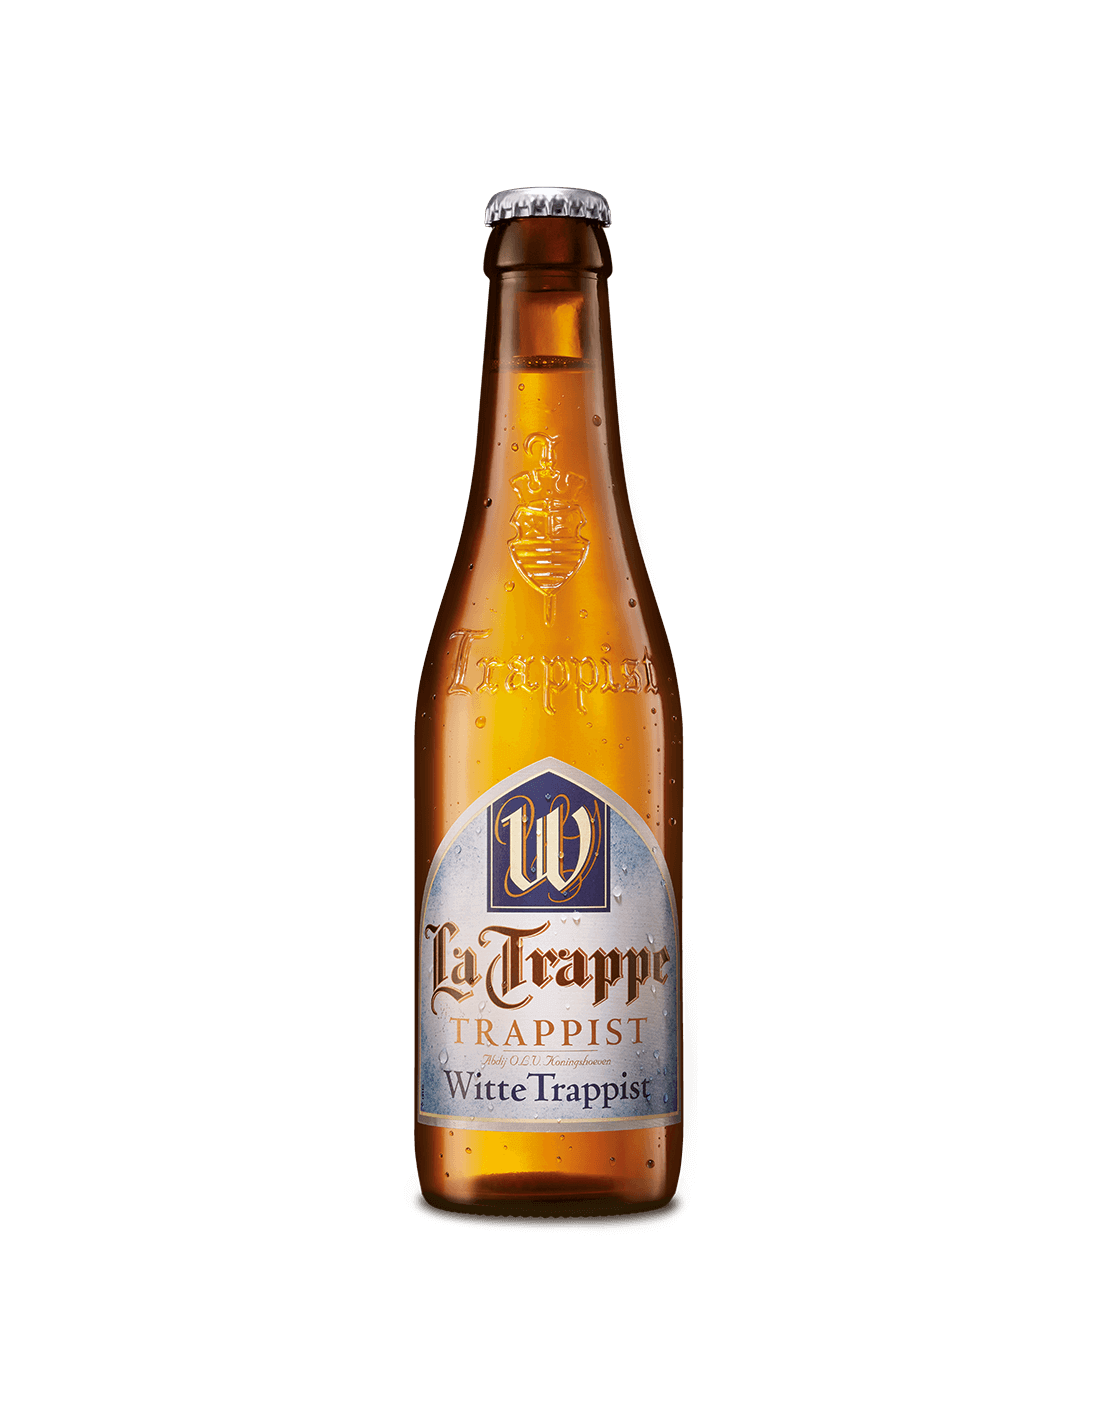 Bere blonda, nefiltrata La Trappe Witte, 5.5% alc., 0.33L, Belgia alcooldiscount.ro